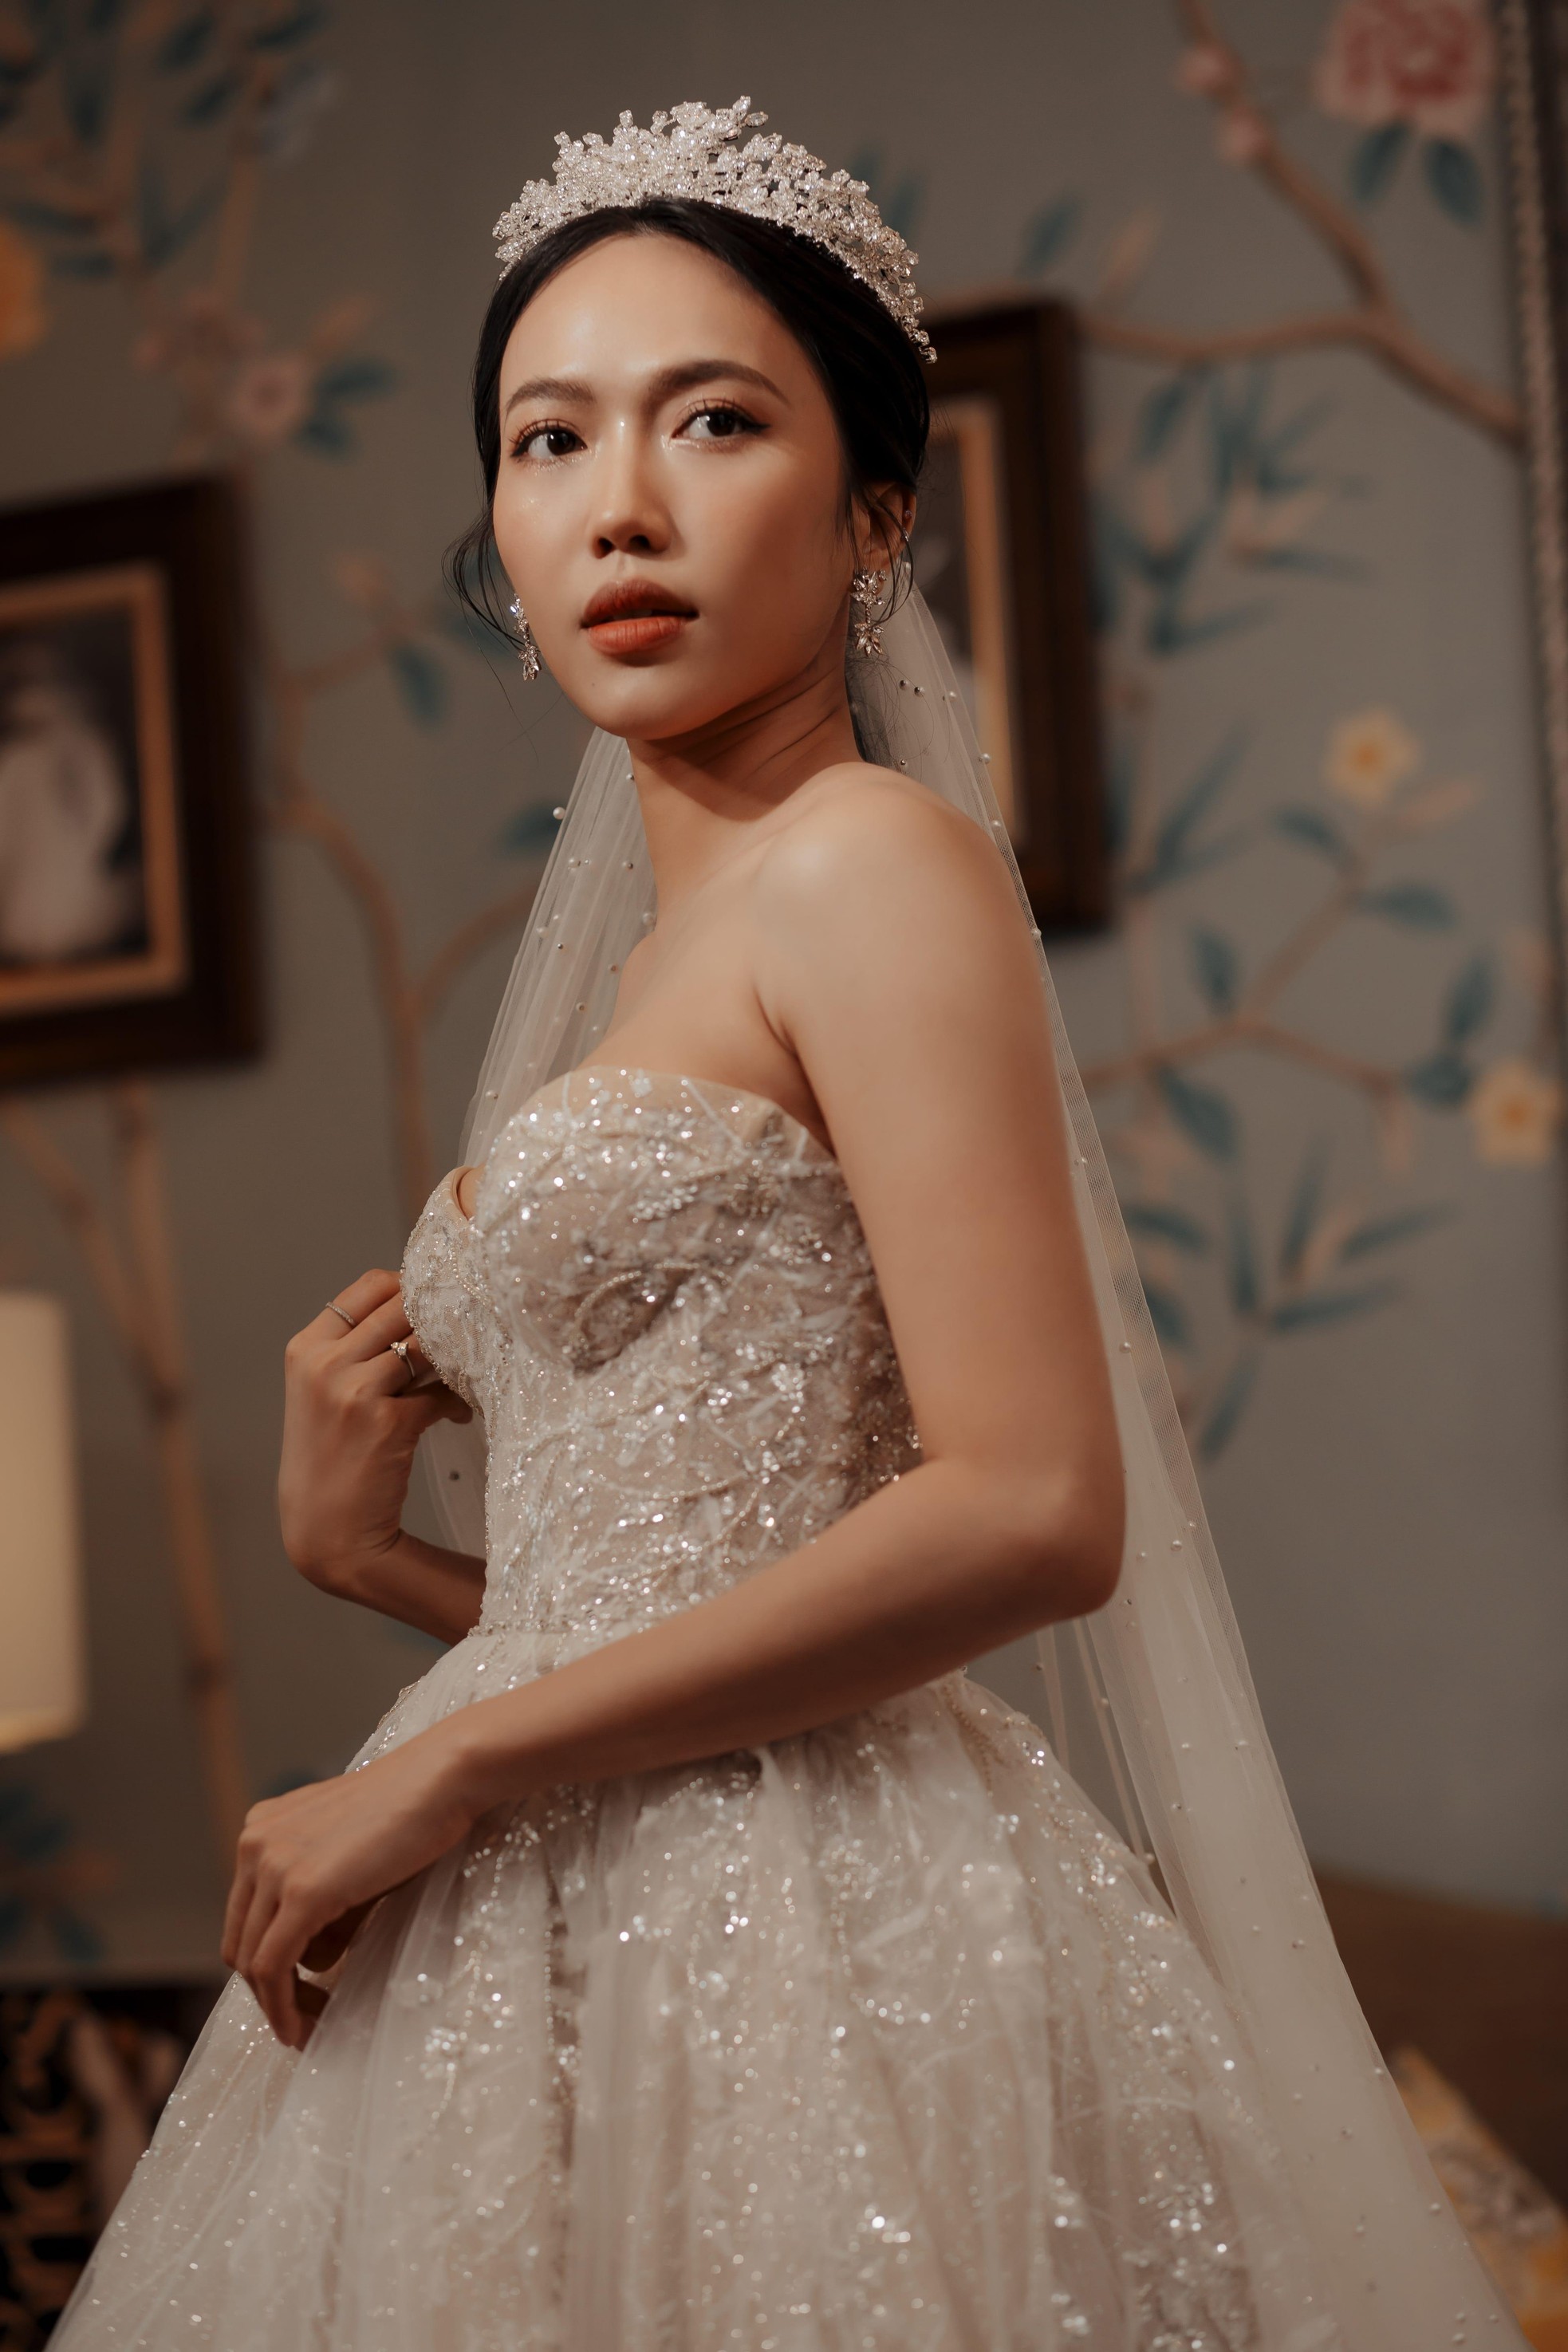 Sao Việt thử váy cưới: Ngô Thanh Vân tin tưởng bạn thân, Diệu Nhi nhận cơn mưa lời khen ảnh 1